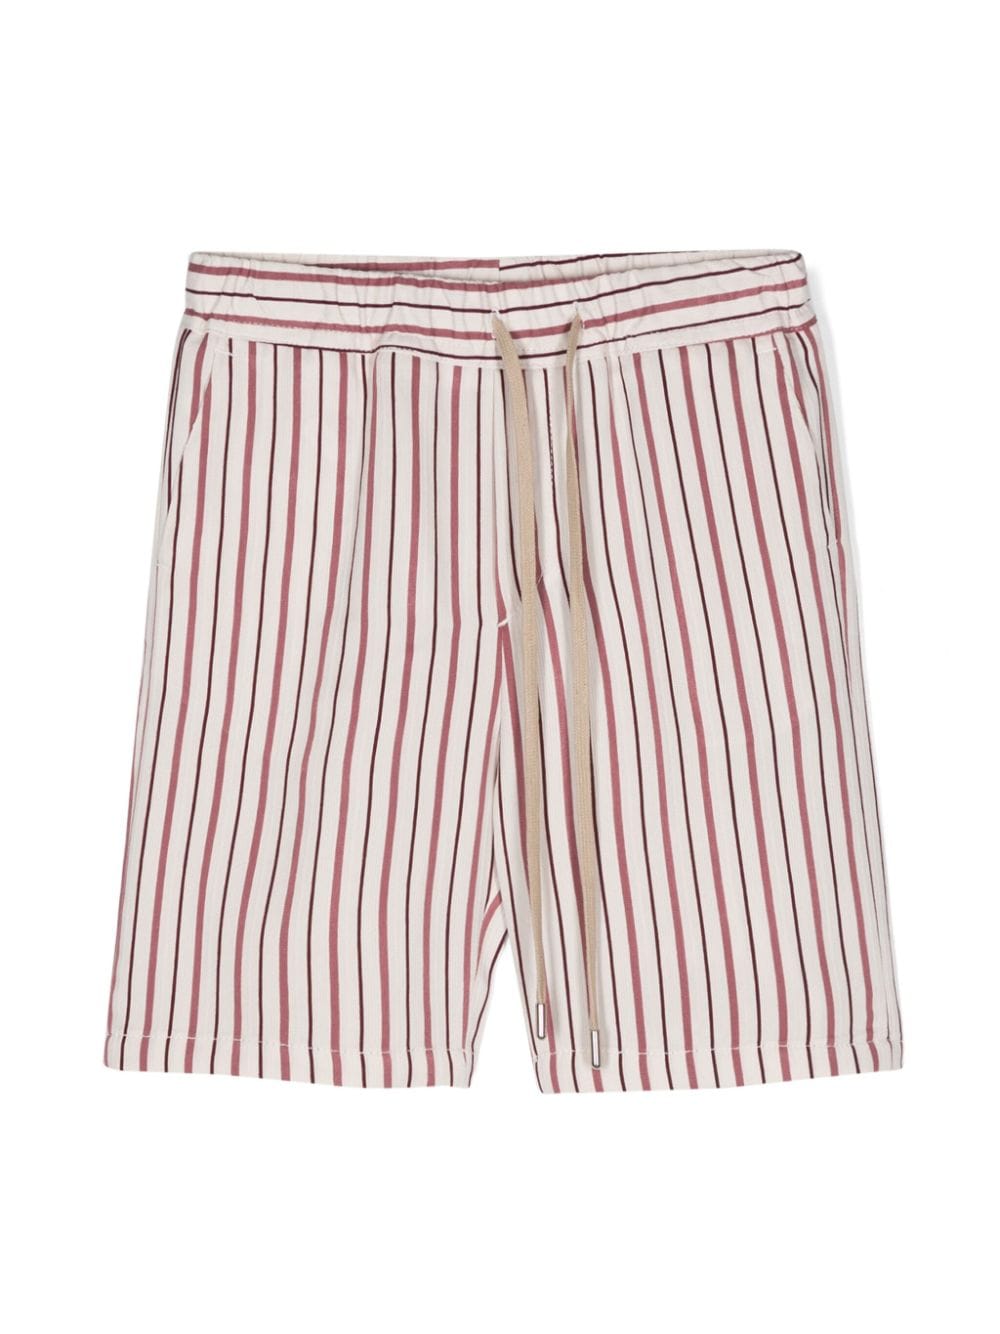 Costumein Kids' Striped Bermuda Shorts In Red